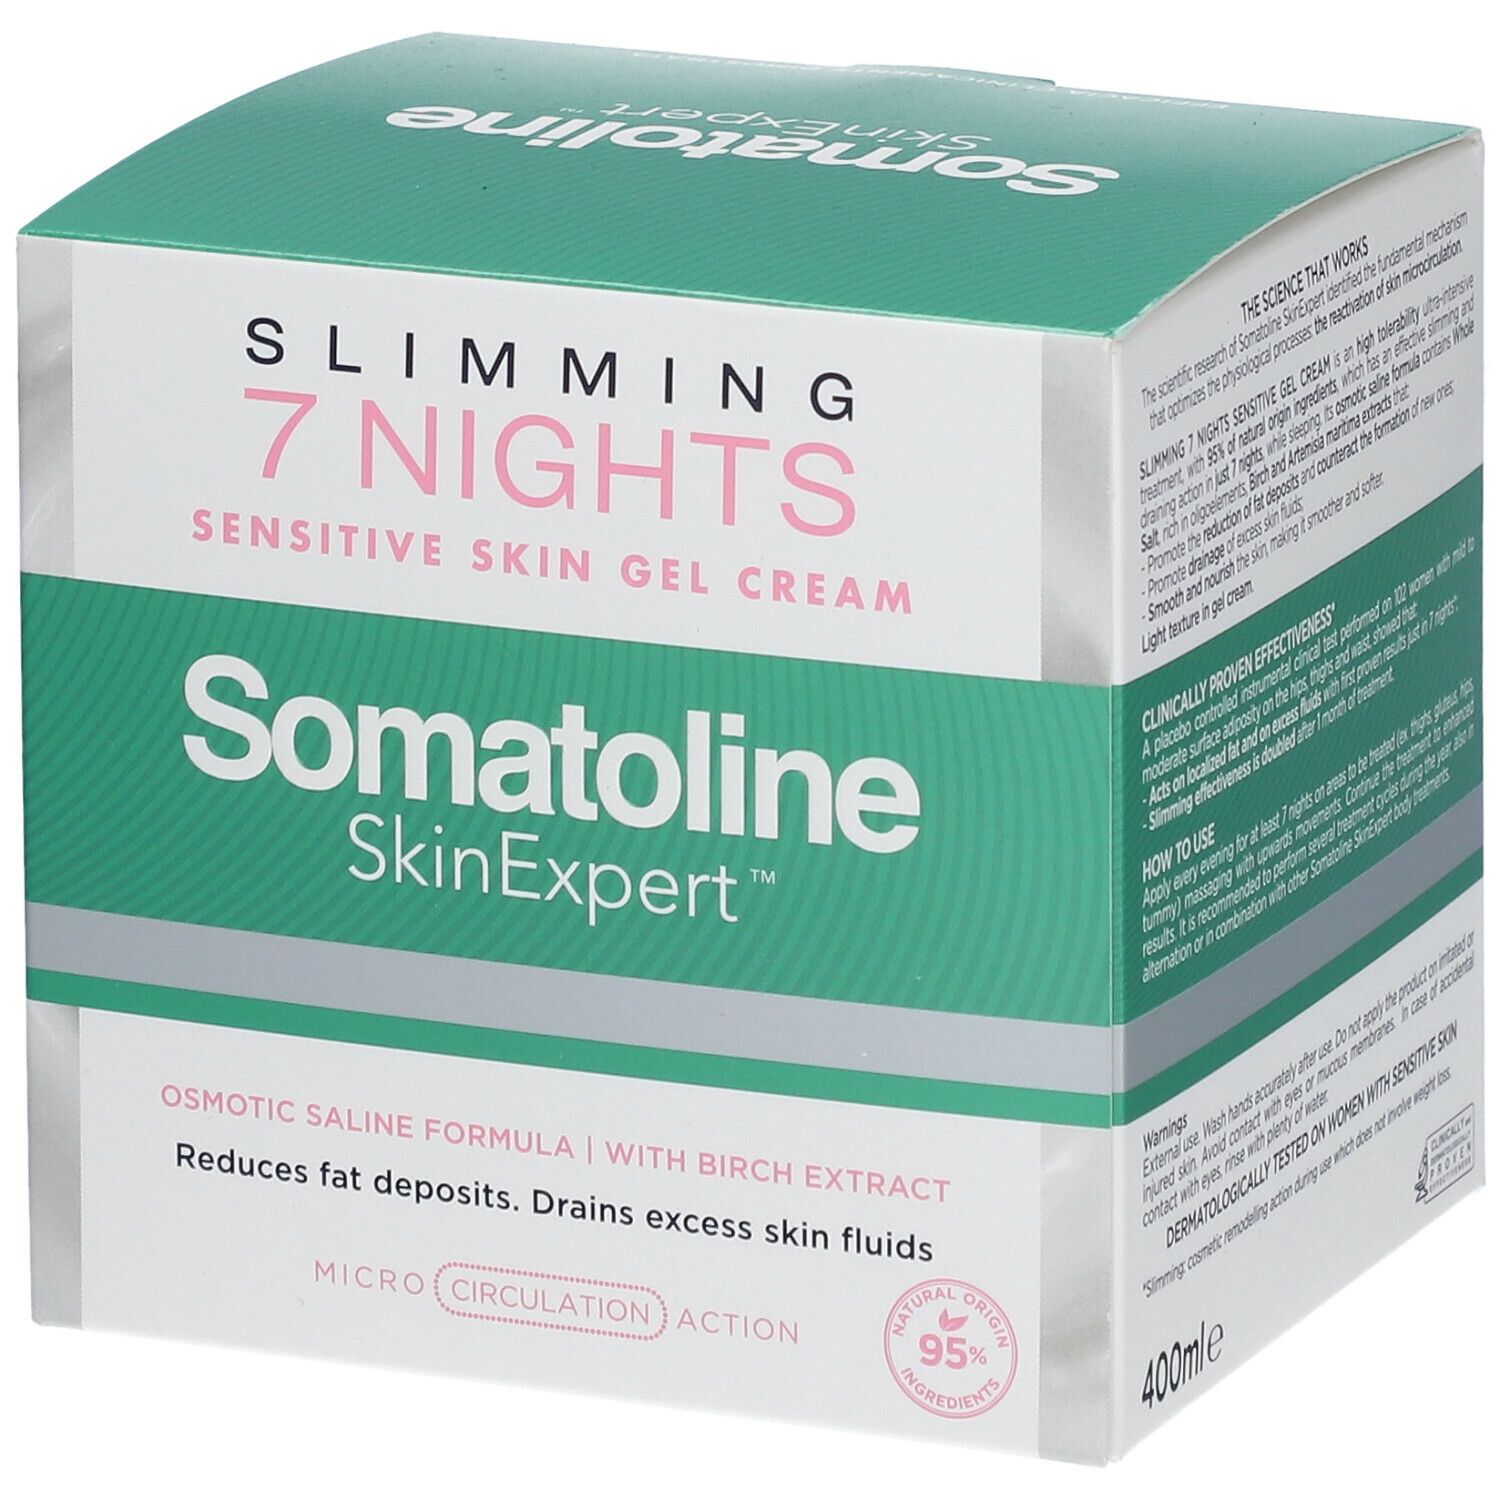 Somatoline Cosmetic® Snellente 7 Notti Natural